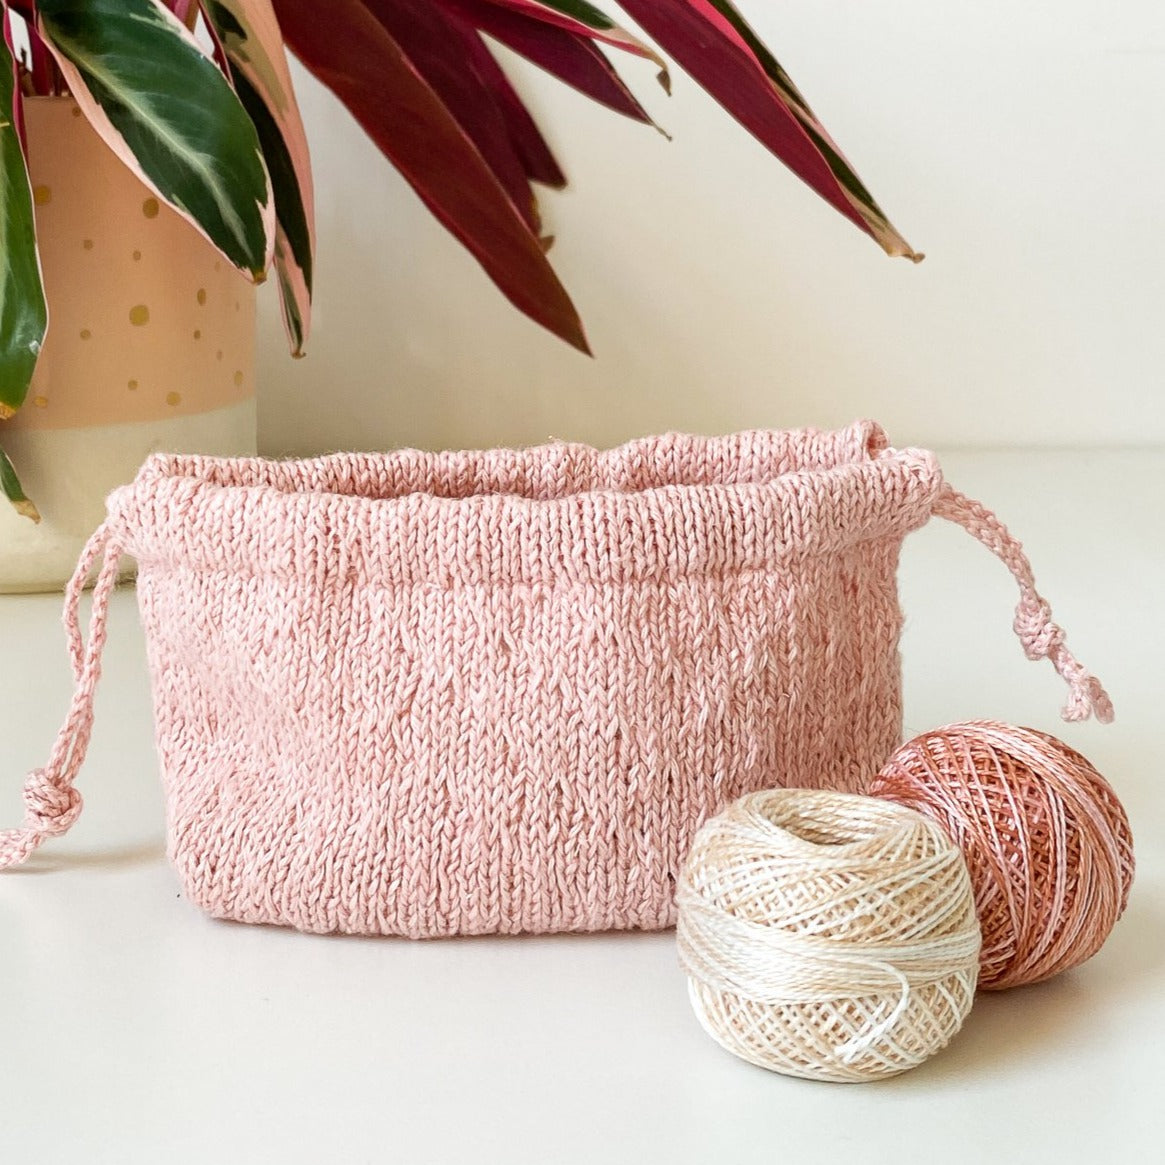 Mini Trellis Stitch Drawstring Bag Kit